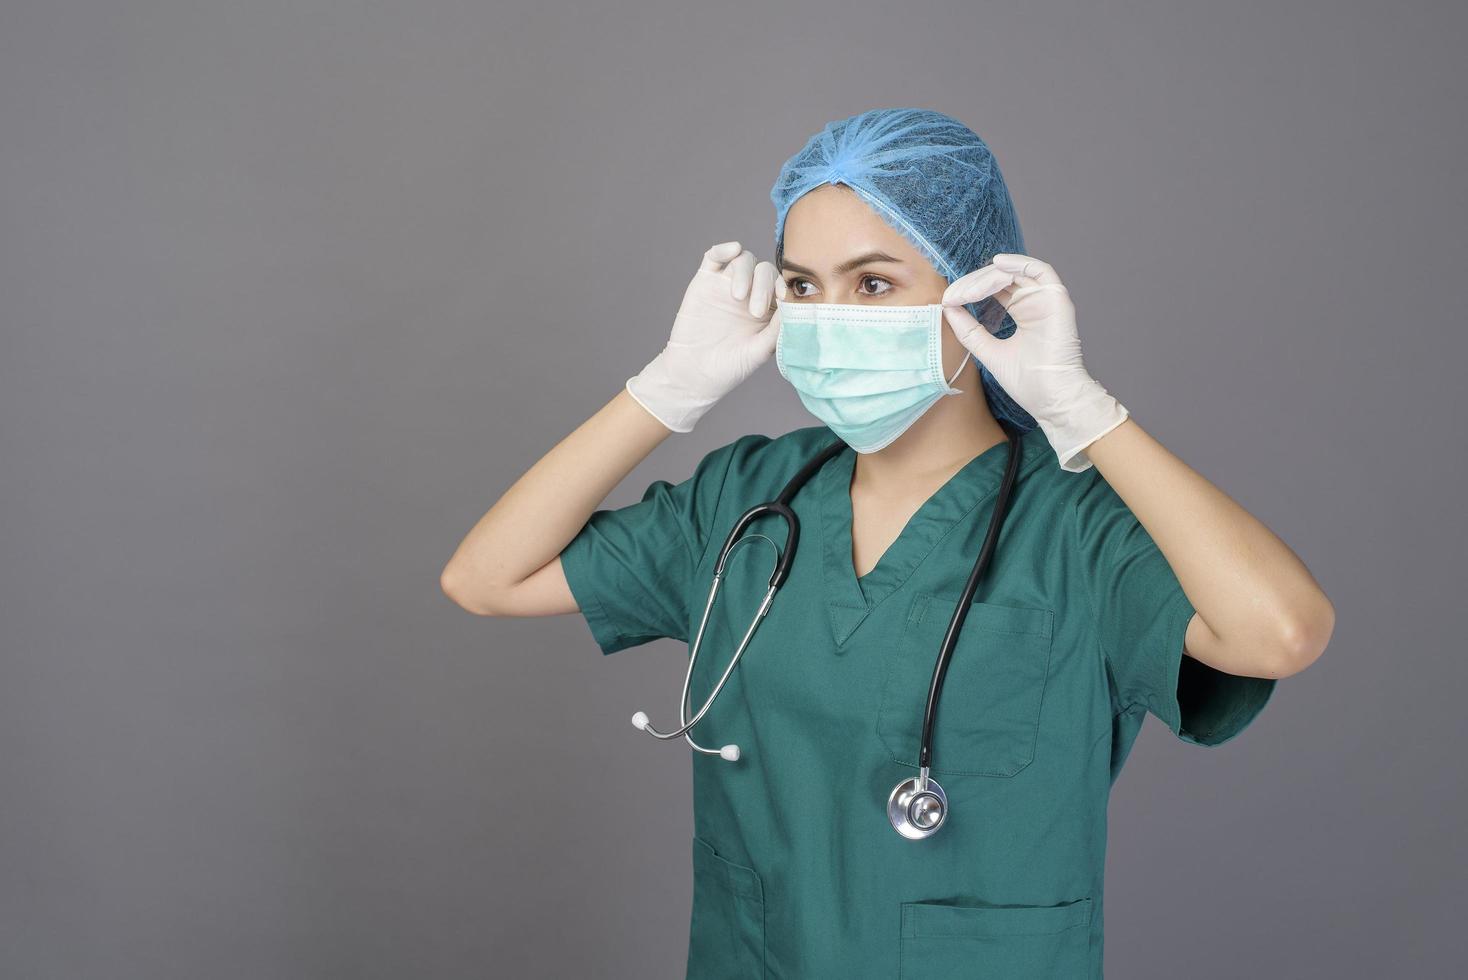 una joven doctora segura de sí misma con exfoliaciones verdes lleva una máscara quirúrgica sobre un estudio de fondo gris foto